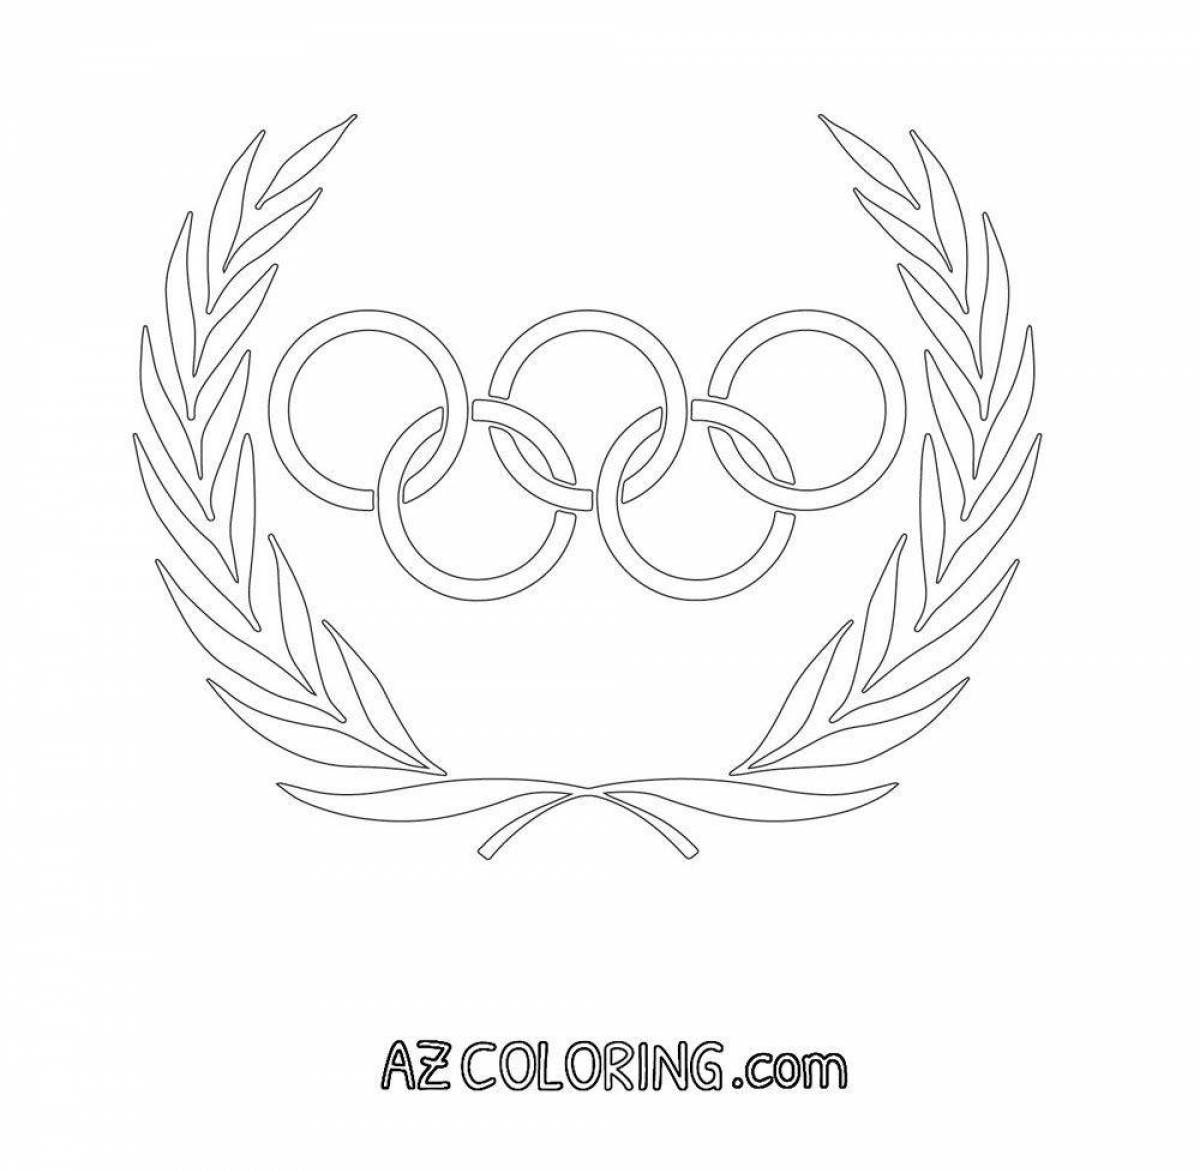 Раскраска восхитительные олимпийские кольца